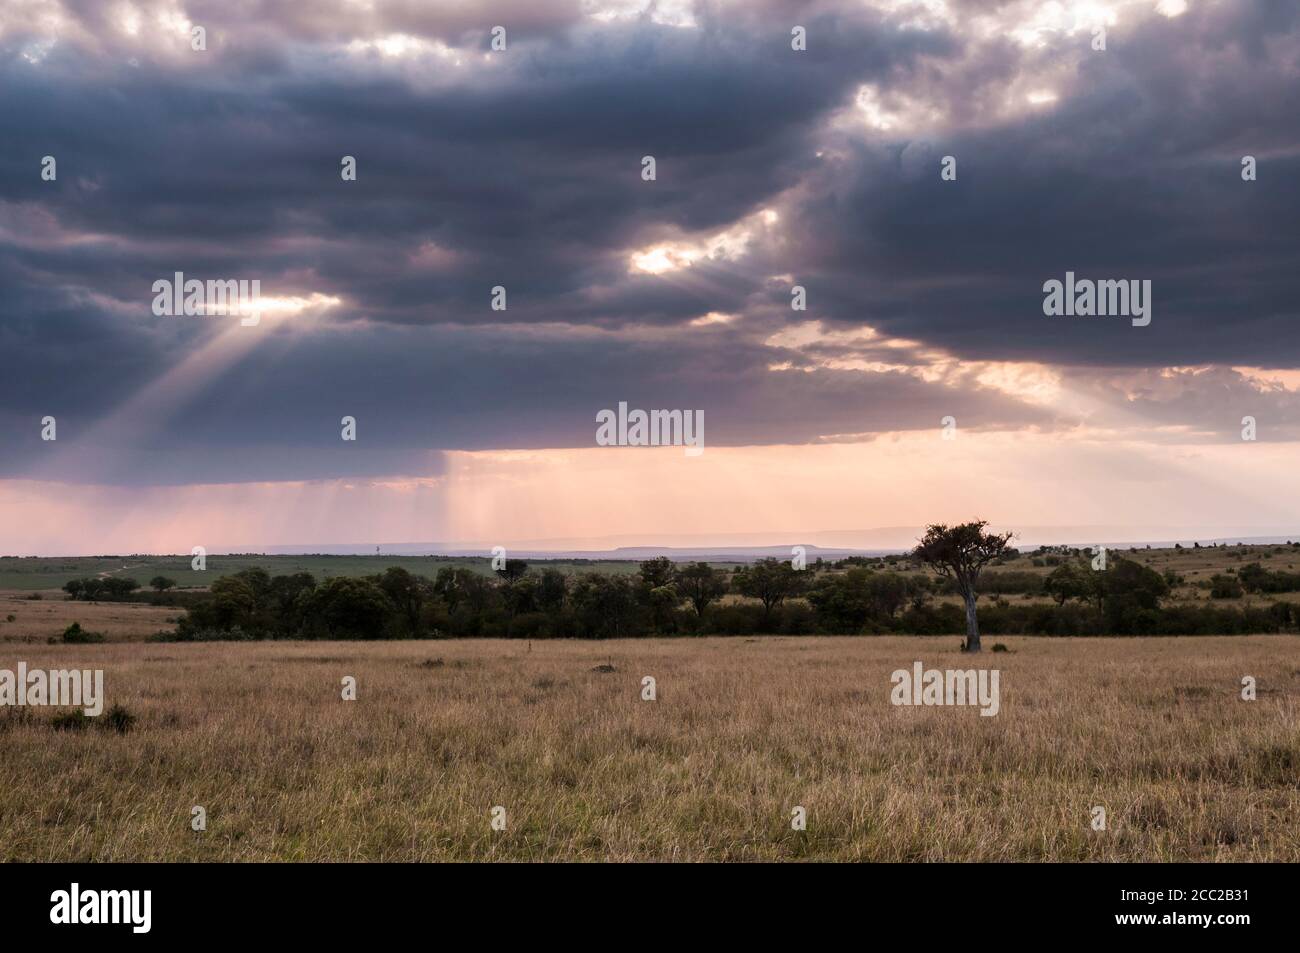 Afrique, Kenya, vue de paysage de savane au Parc National du Masai Mara Banque D'Images